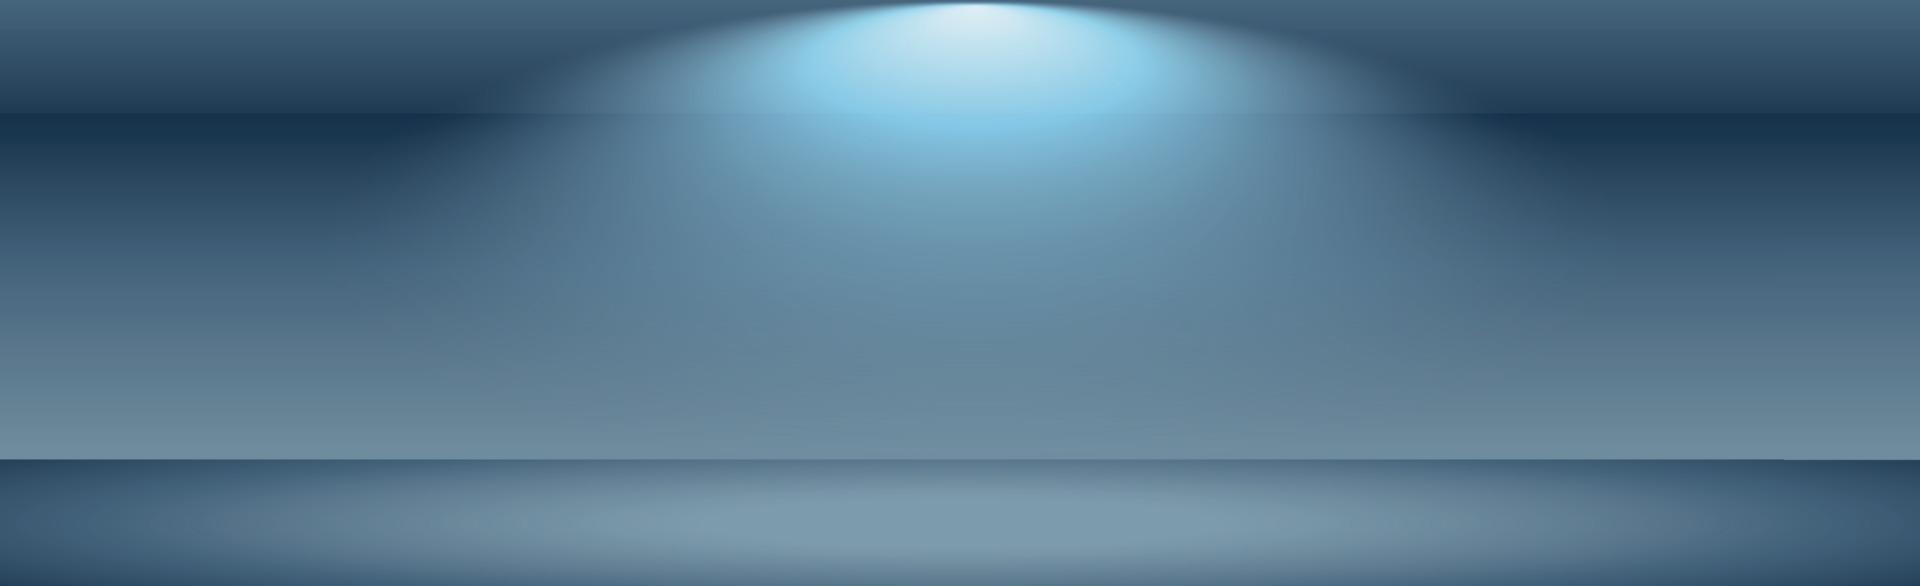 blauer Panorama-Studiohintergrund mit weißem Glühen vektor